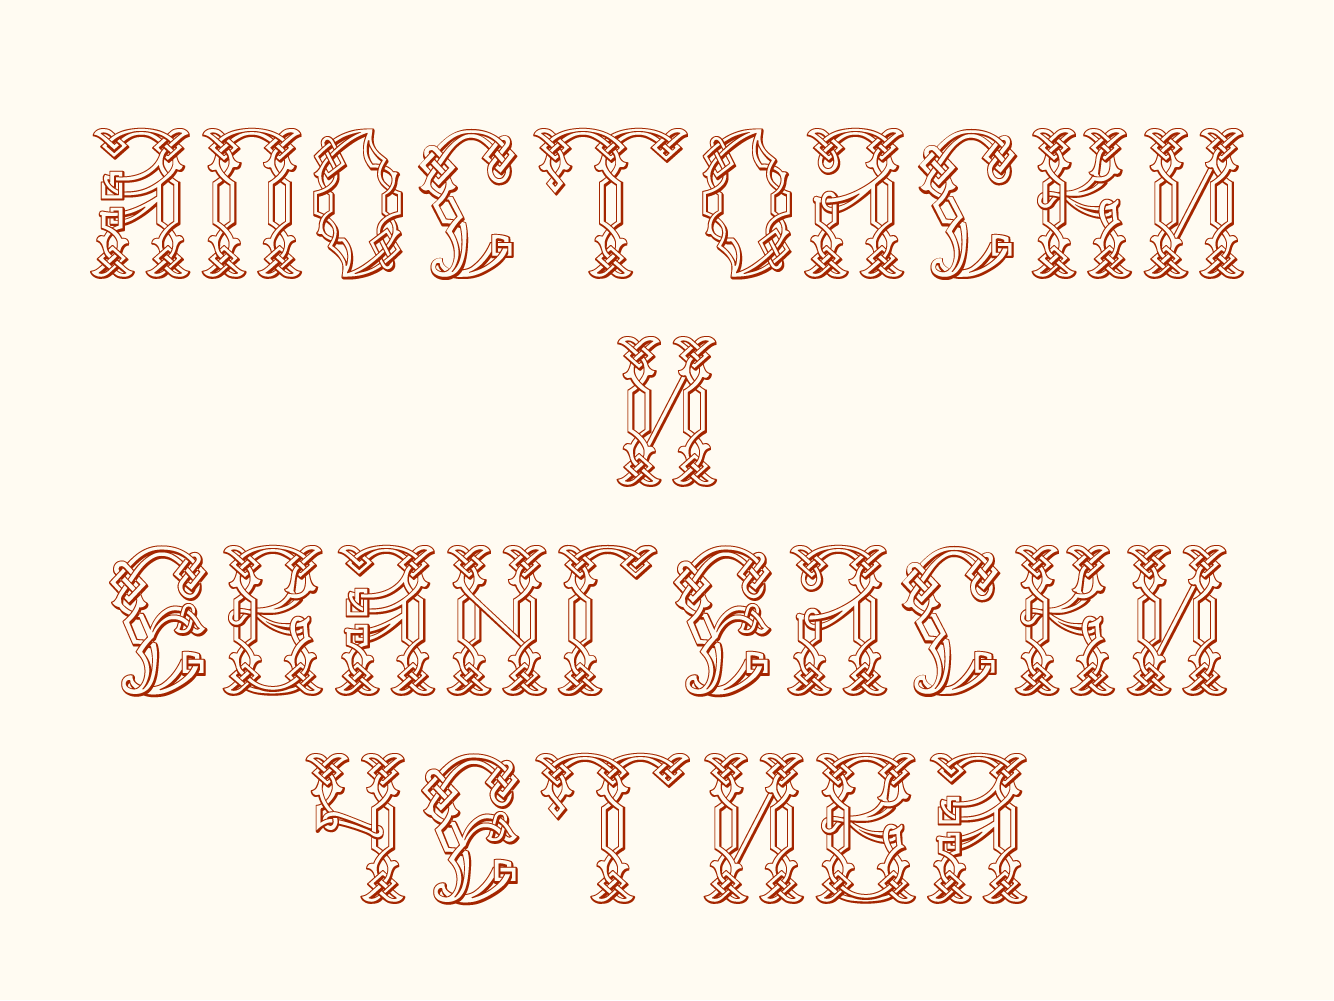 Beispiel einer Vertograd Unicode Regular-Schriftart